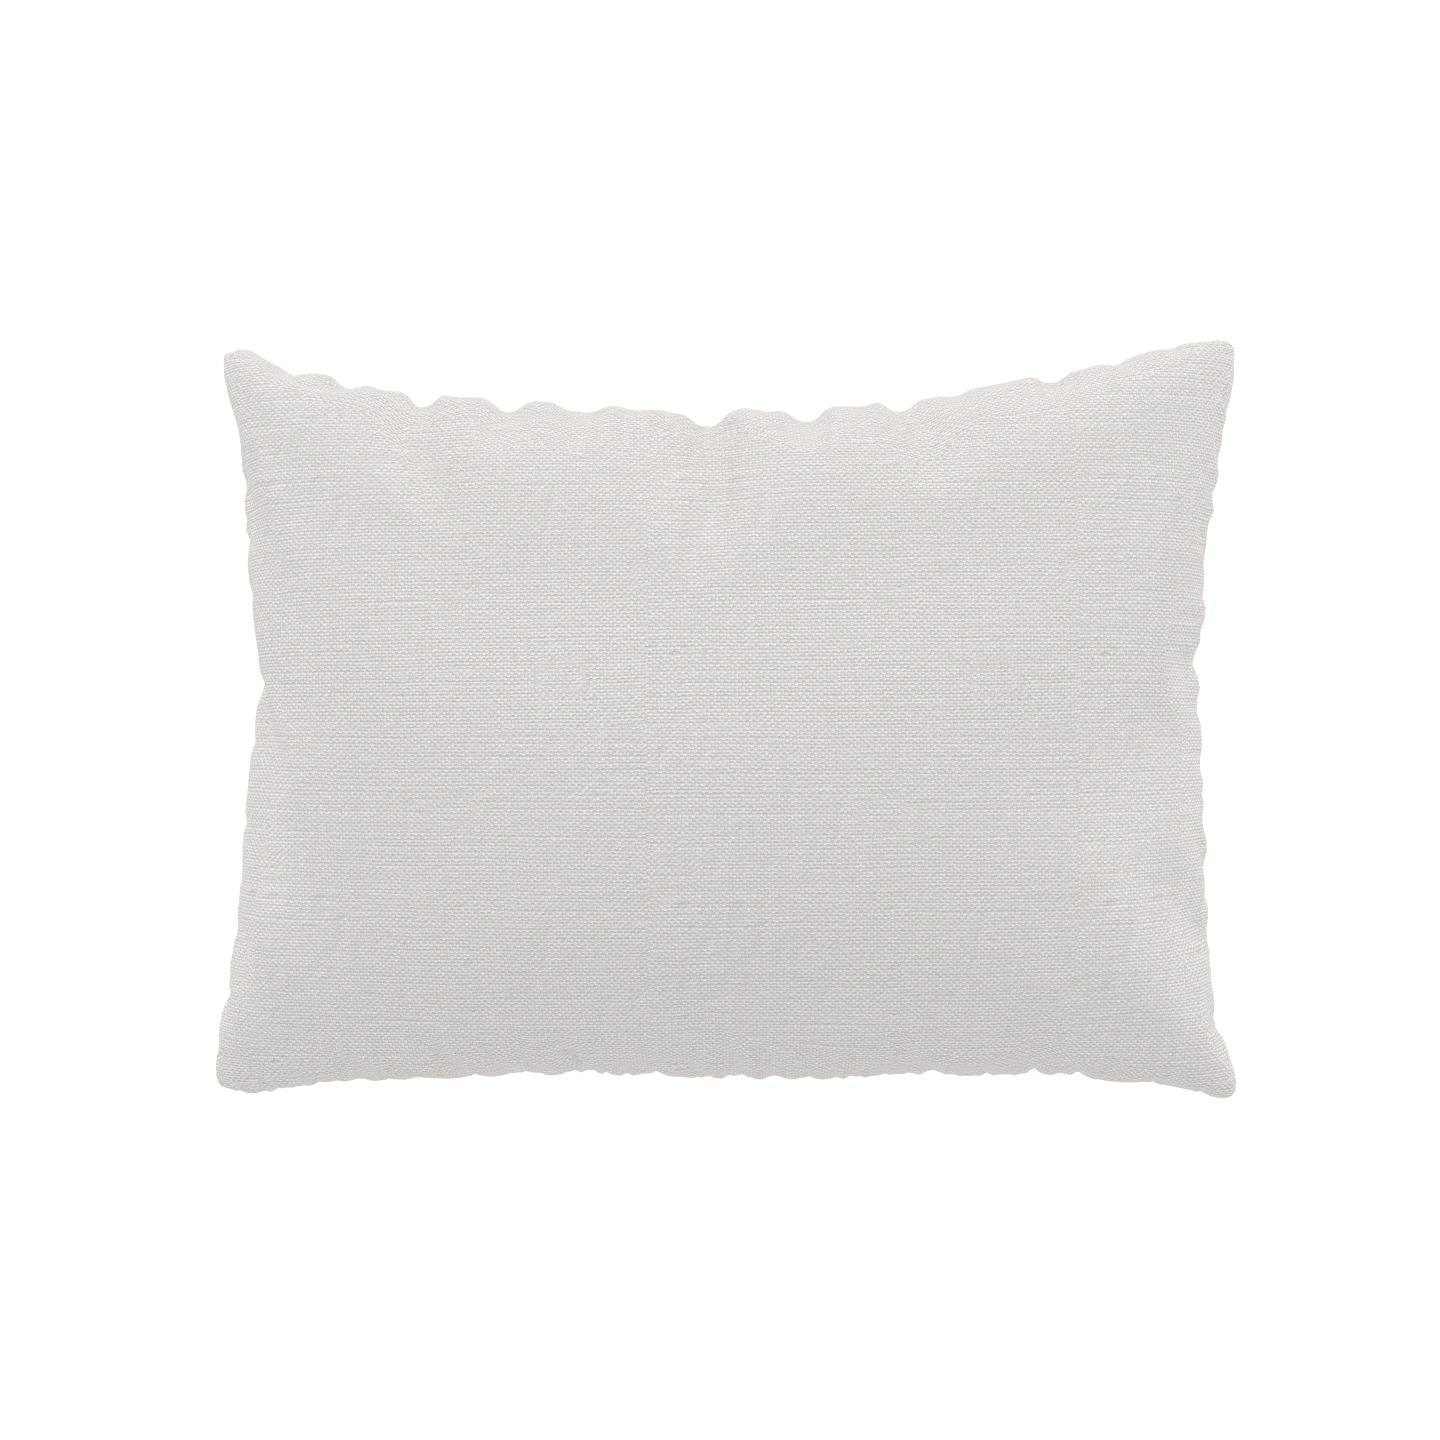 MYCS Coussin Blanc - 48x65 cm - Housse en Textile tissé. Coussin de canapé moelleux